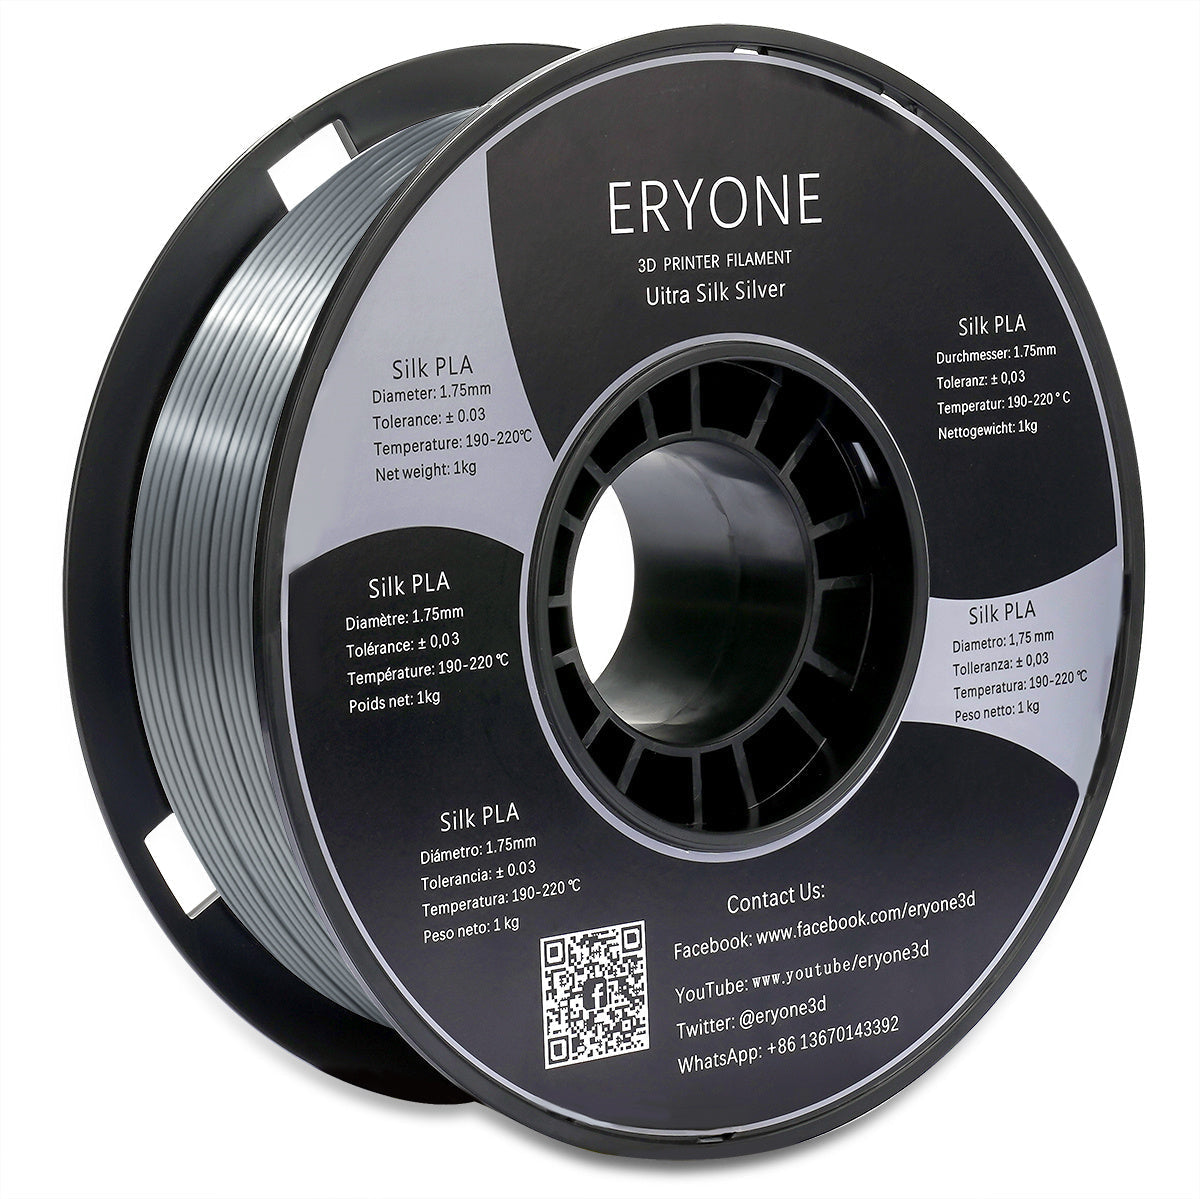 ERYONE Ultra Silk PLA Filament pour imprimante 3D 1.75mm, précision dimensionnelle +/- 0.05 mm, 1kg (2.2LBS) / Bobine (plus brillant et plus éclatant que la soie PLA)